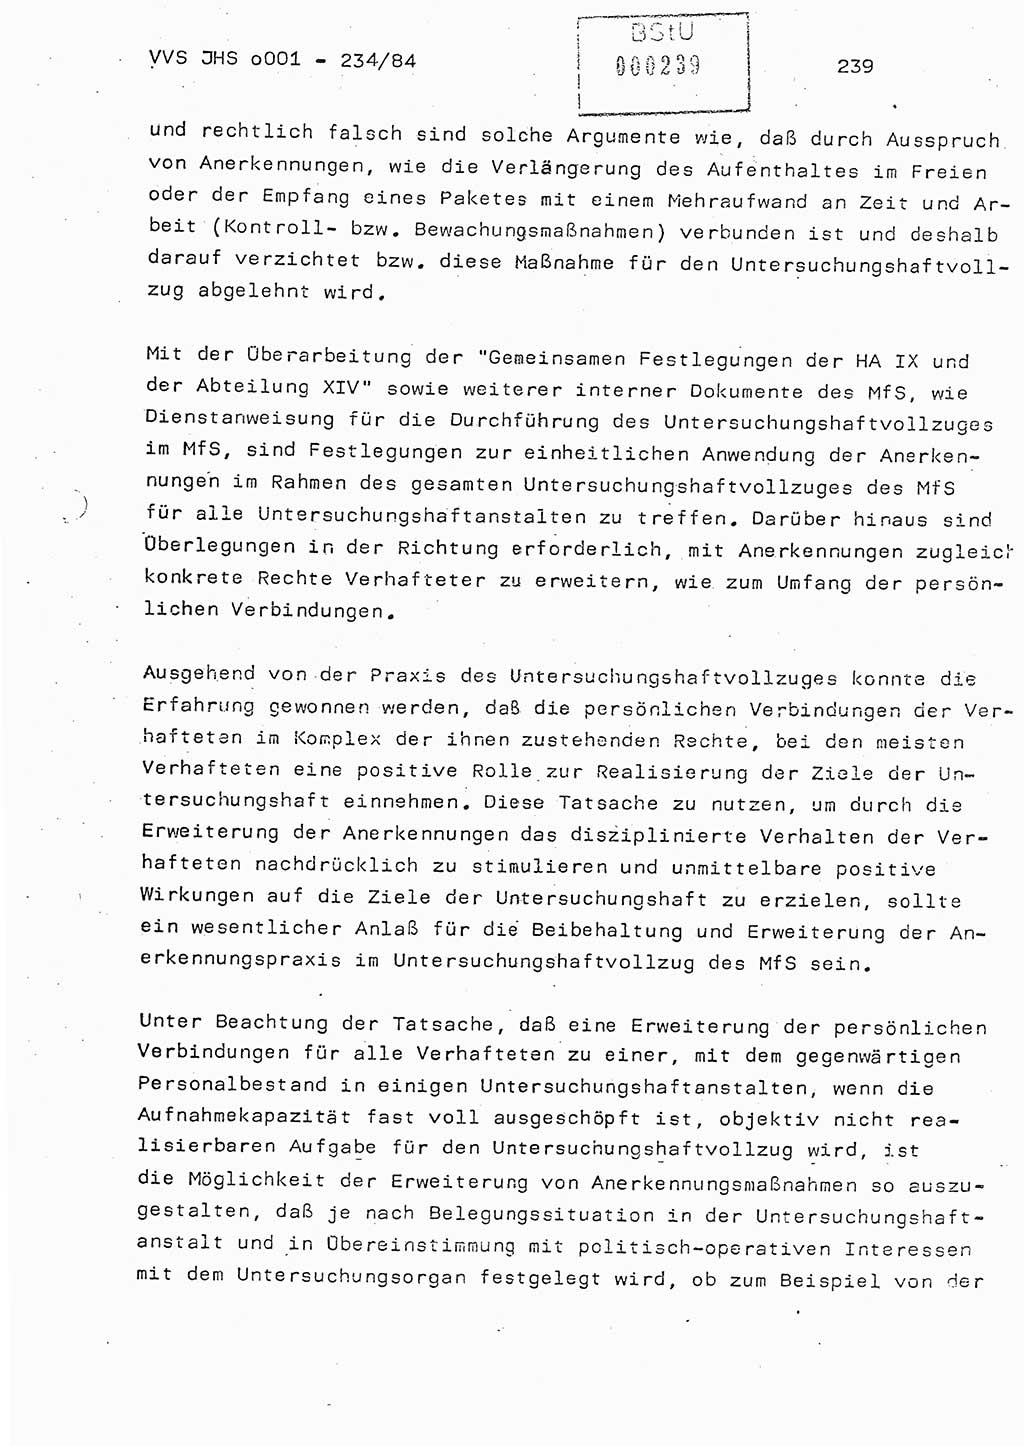 Dissertation Oberst Siegfried Rataizick (Abt. ⅩⅣ), Oberstleutnant Volkmar Heinz (Abt. ⅩⅣ), Oberstleutnant Werner Stein (HA Ⅸ), Hauptmann Heinz Conrad (JHS), Ministerium für Staatssicherheit (MfS) [Deutsche Demokratische Republik (DDR)], Juristische Hochschule (JHS), Vertrauliche Verschlußsache (VVS) o001-234/84, Potsdam 1984, Seite 239 (Diss. MfS DDR JHS VVS o001-234/84 1984, S. 239)